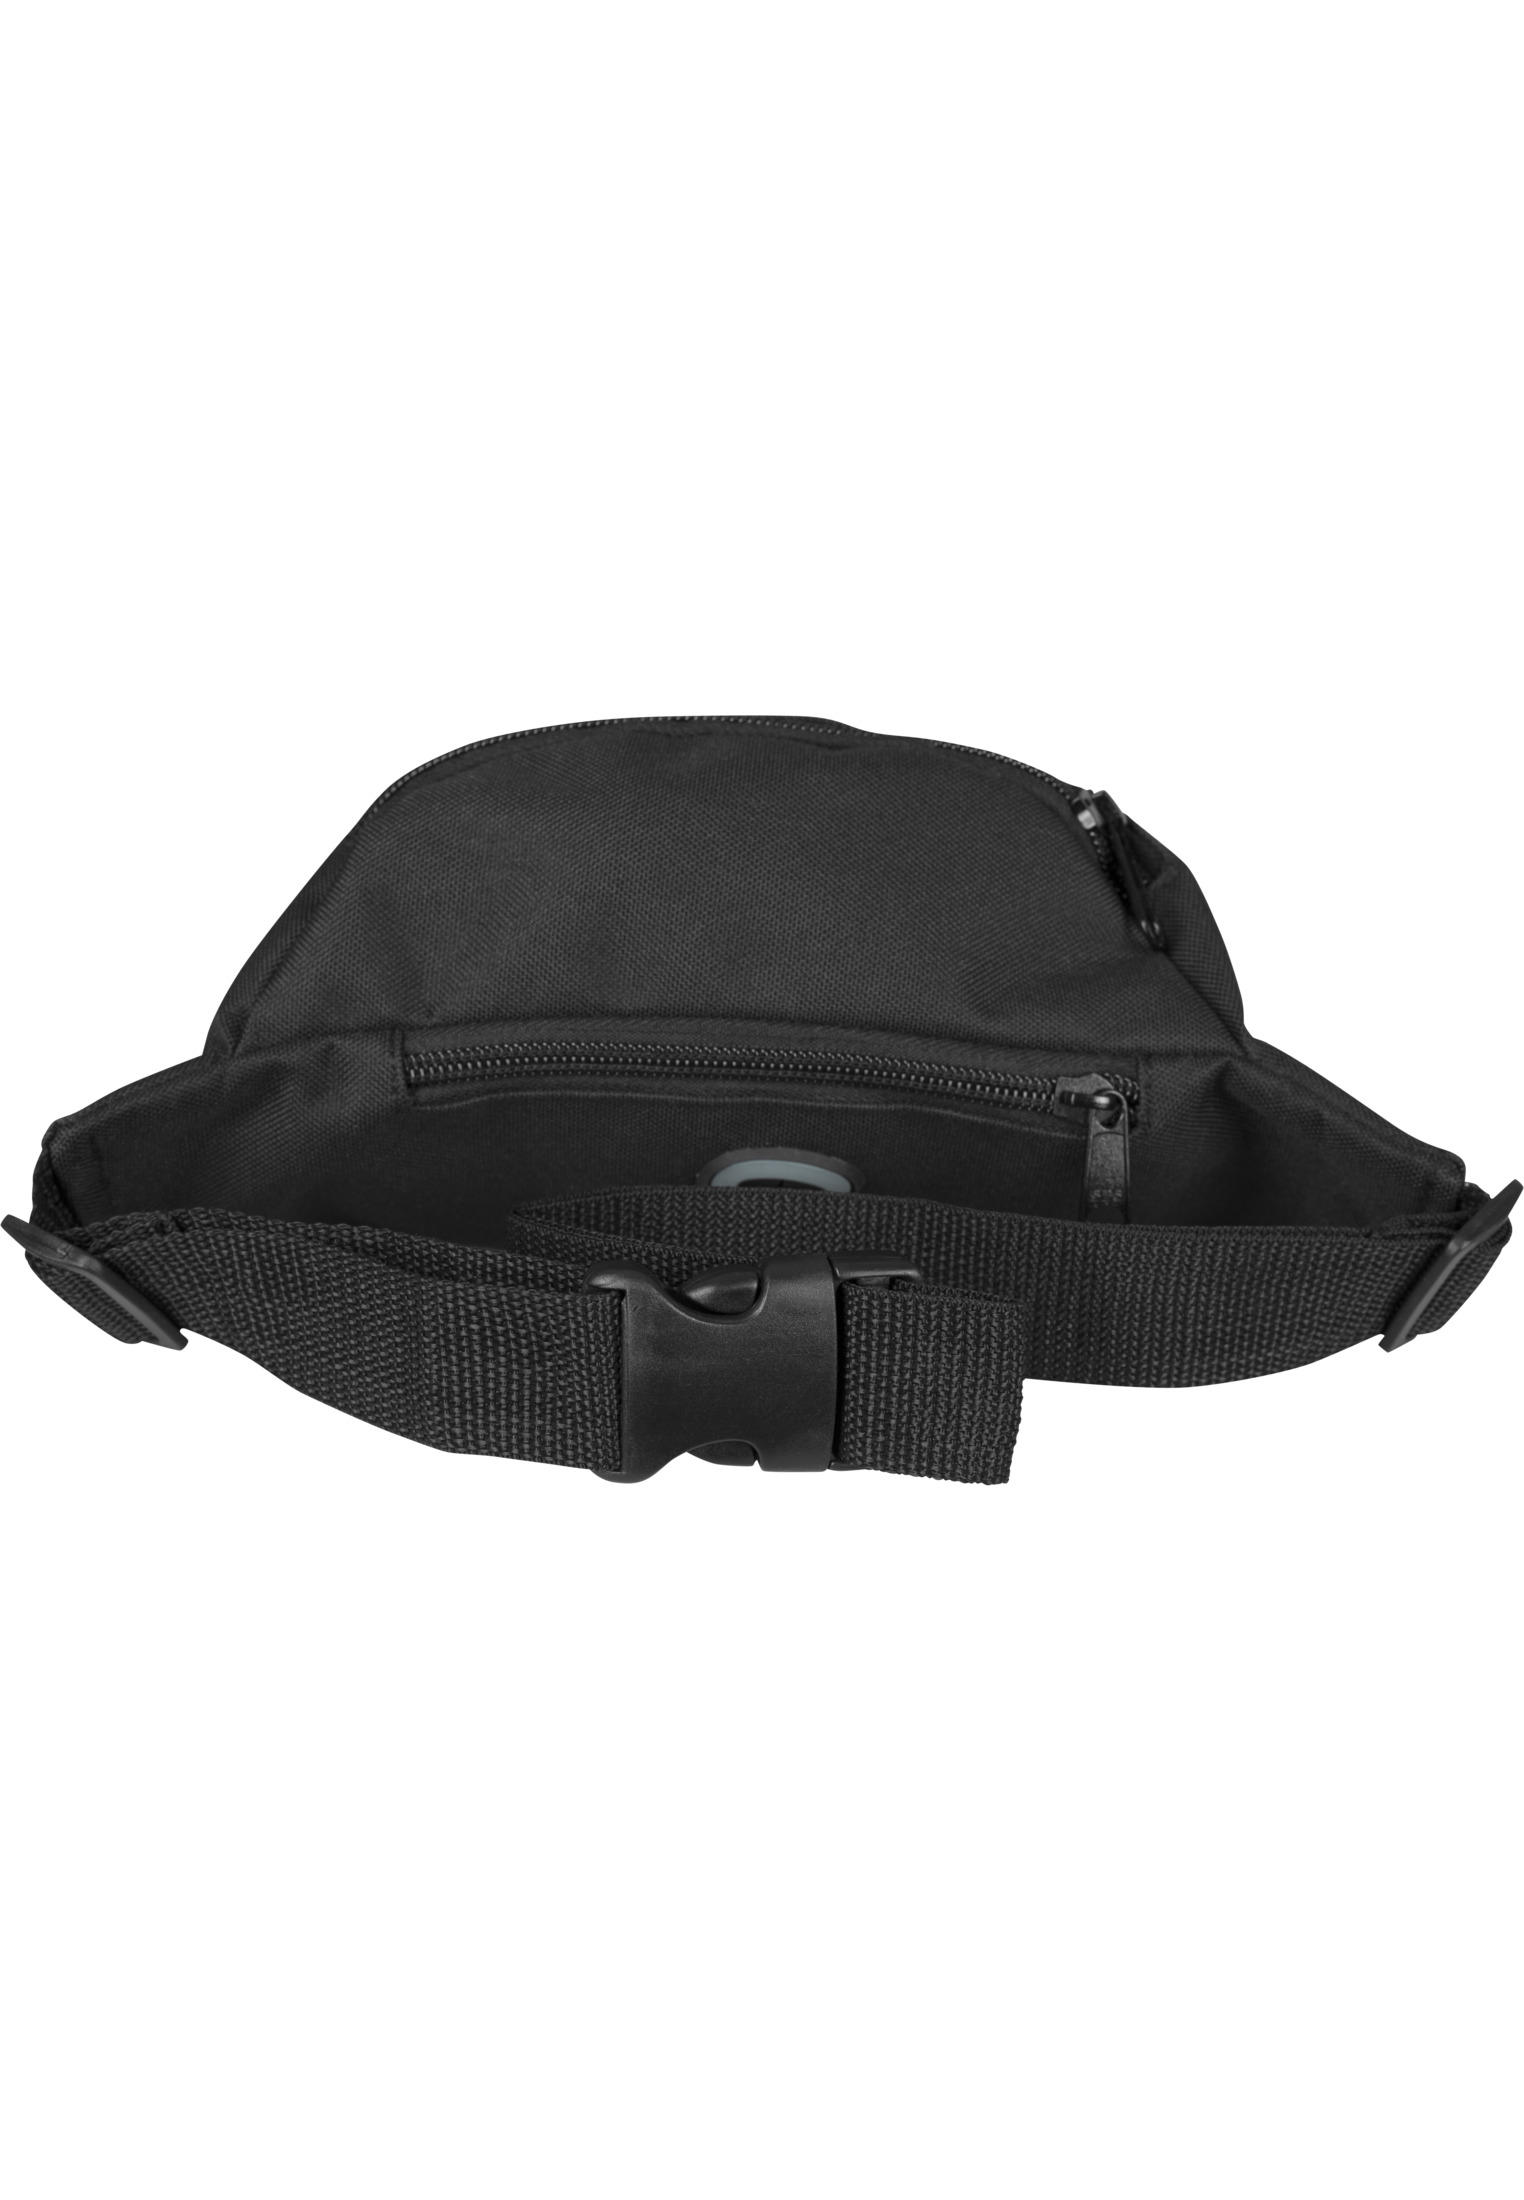 Taschen Triple-Zip Hip Bag in Farbe blk/blk